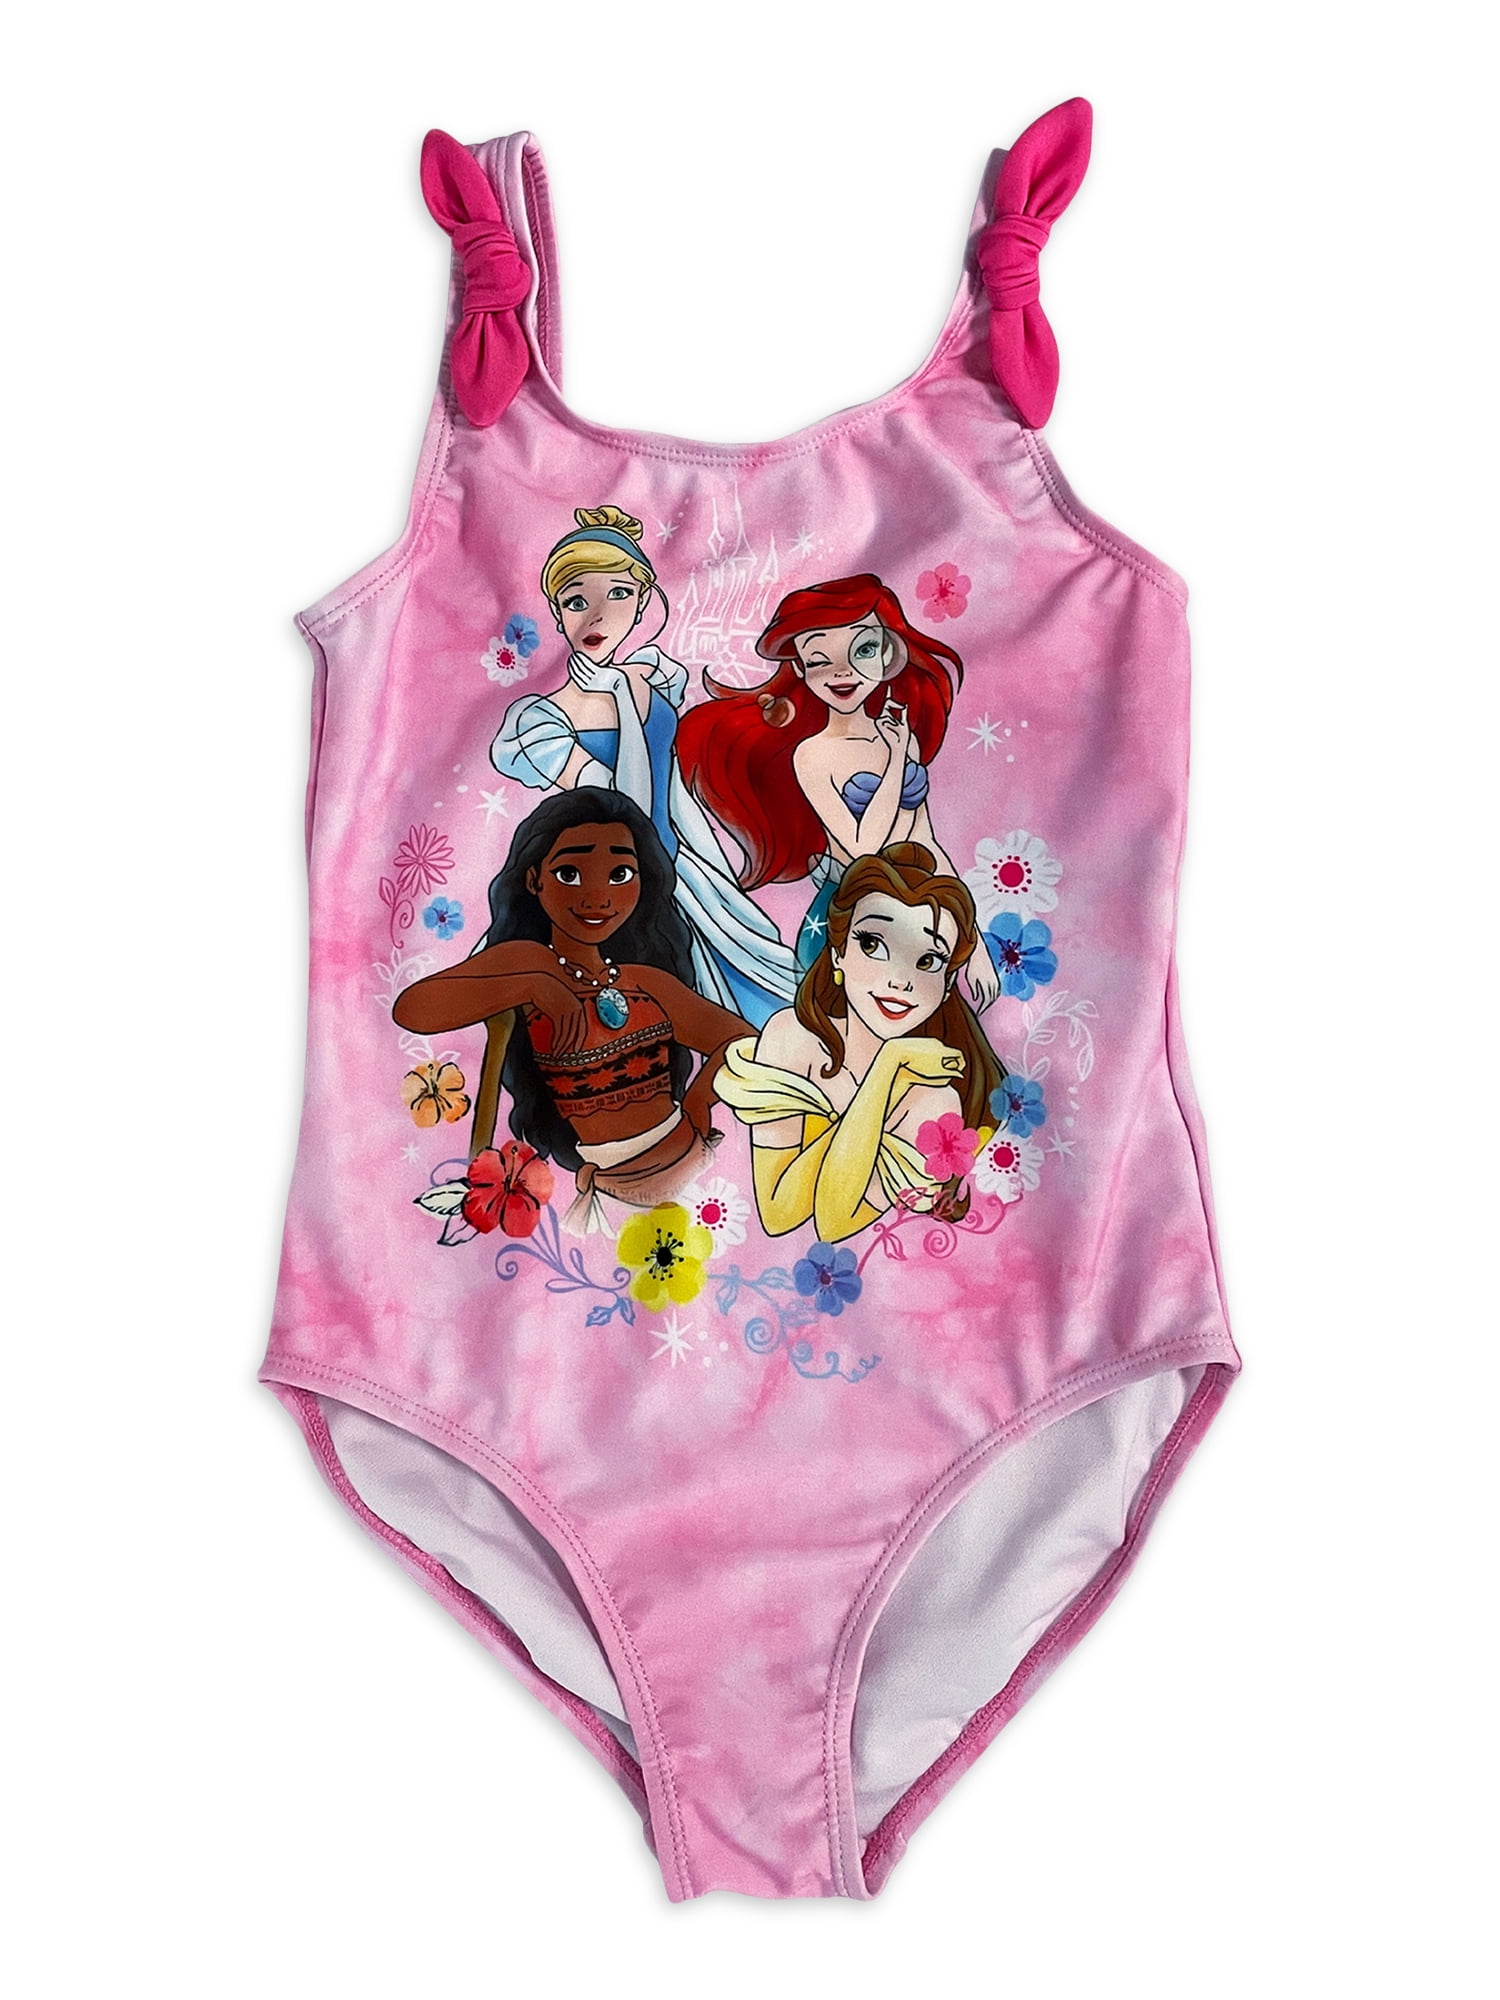 NWT Disney Store Disney Princess Swim Cover-Up for Girls 4 5 6 7 8 9 10 